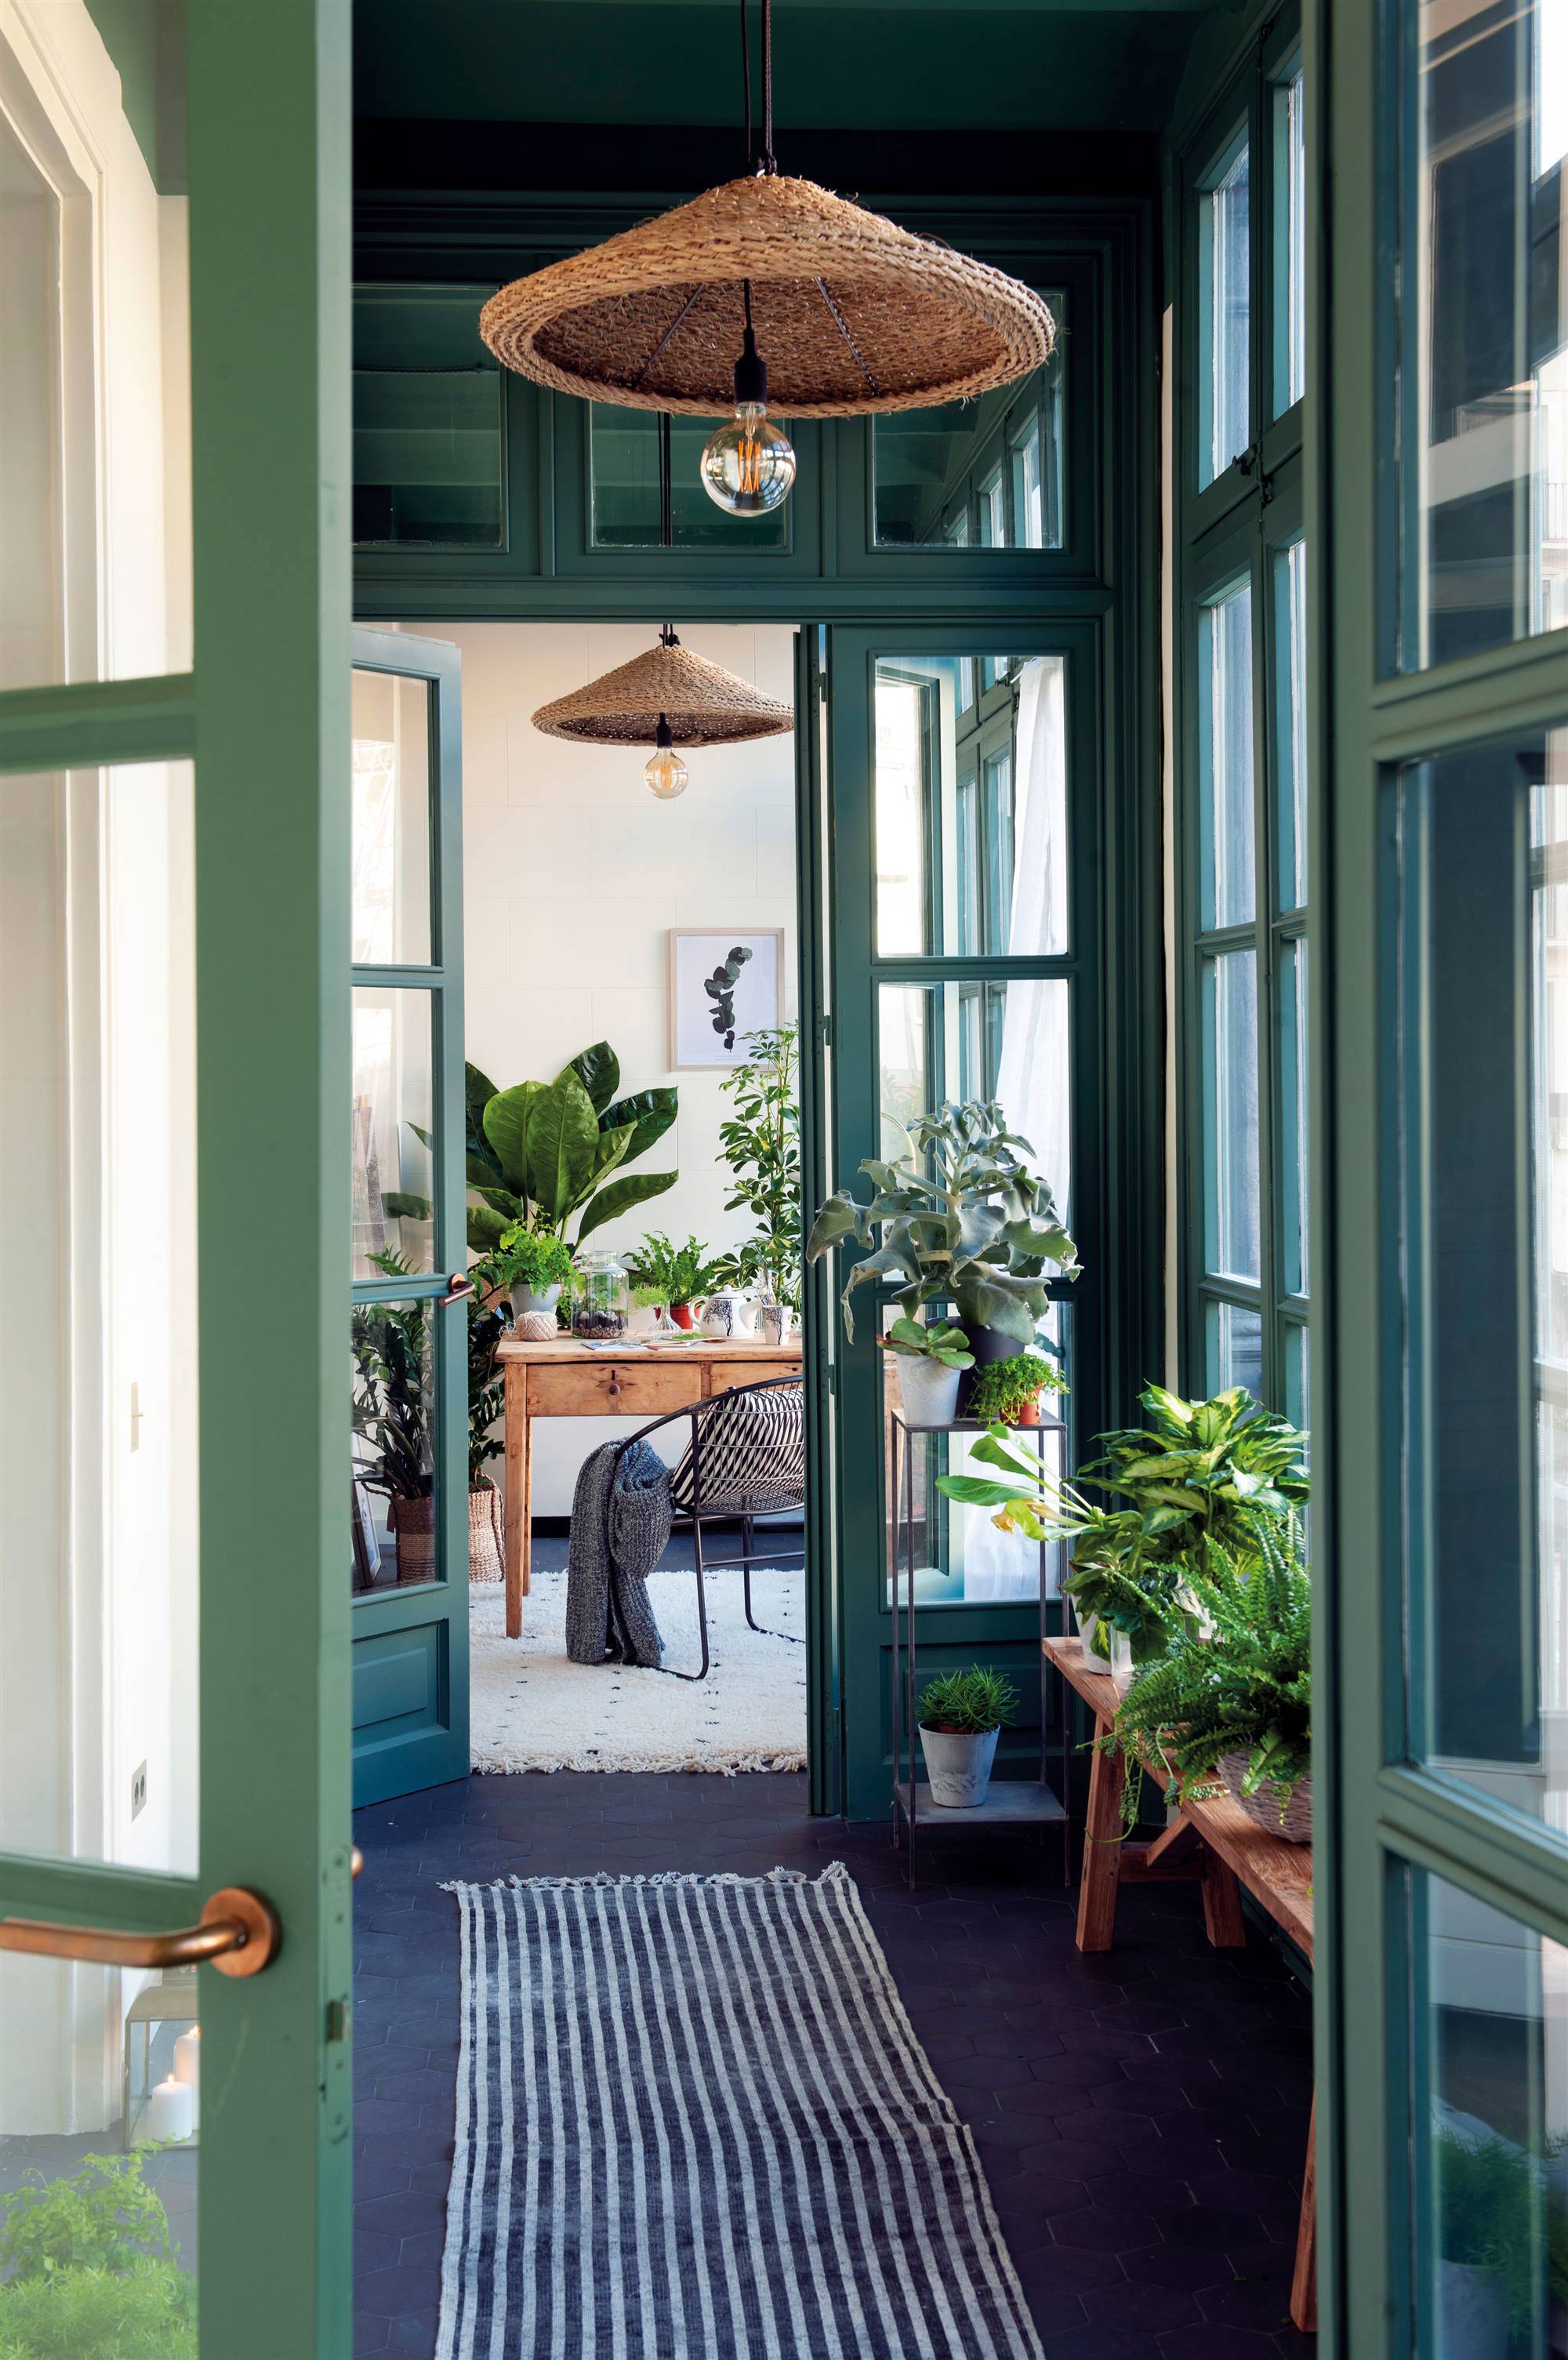 Galería con plantas, lámparas de fibra y puertas pintadas de verde.